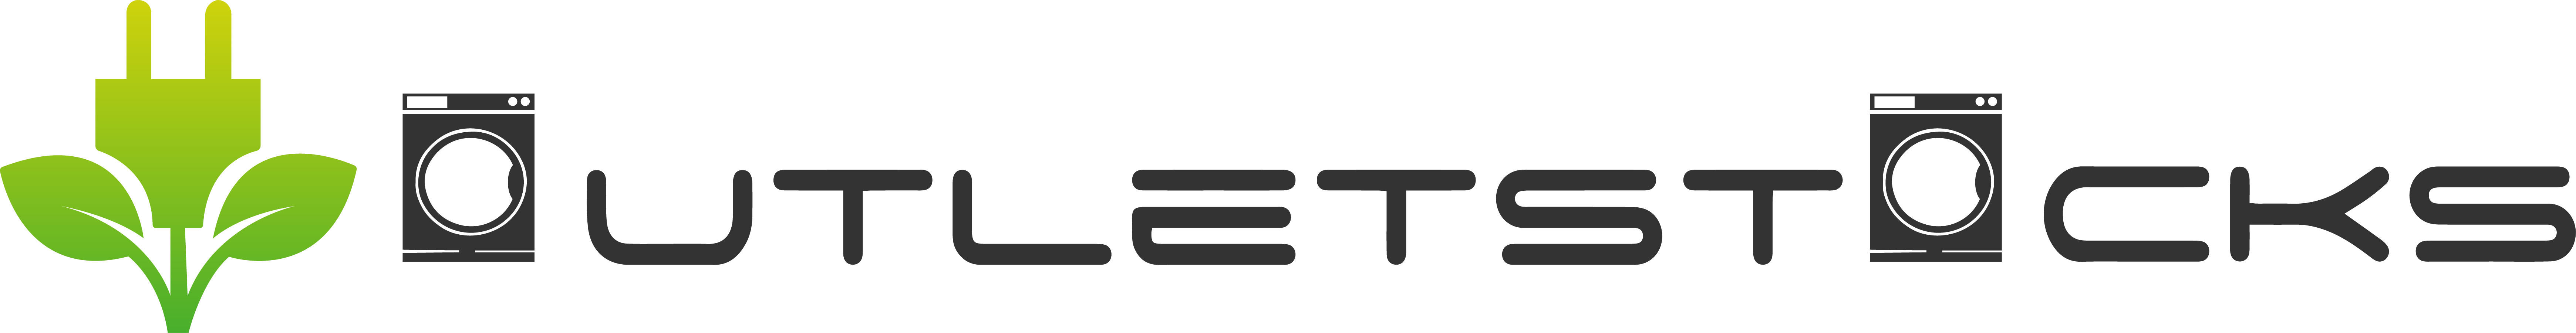 logo-outletstocks